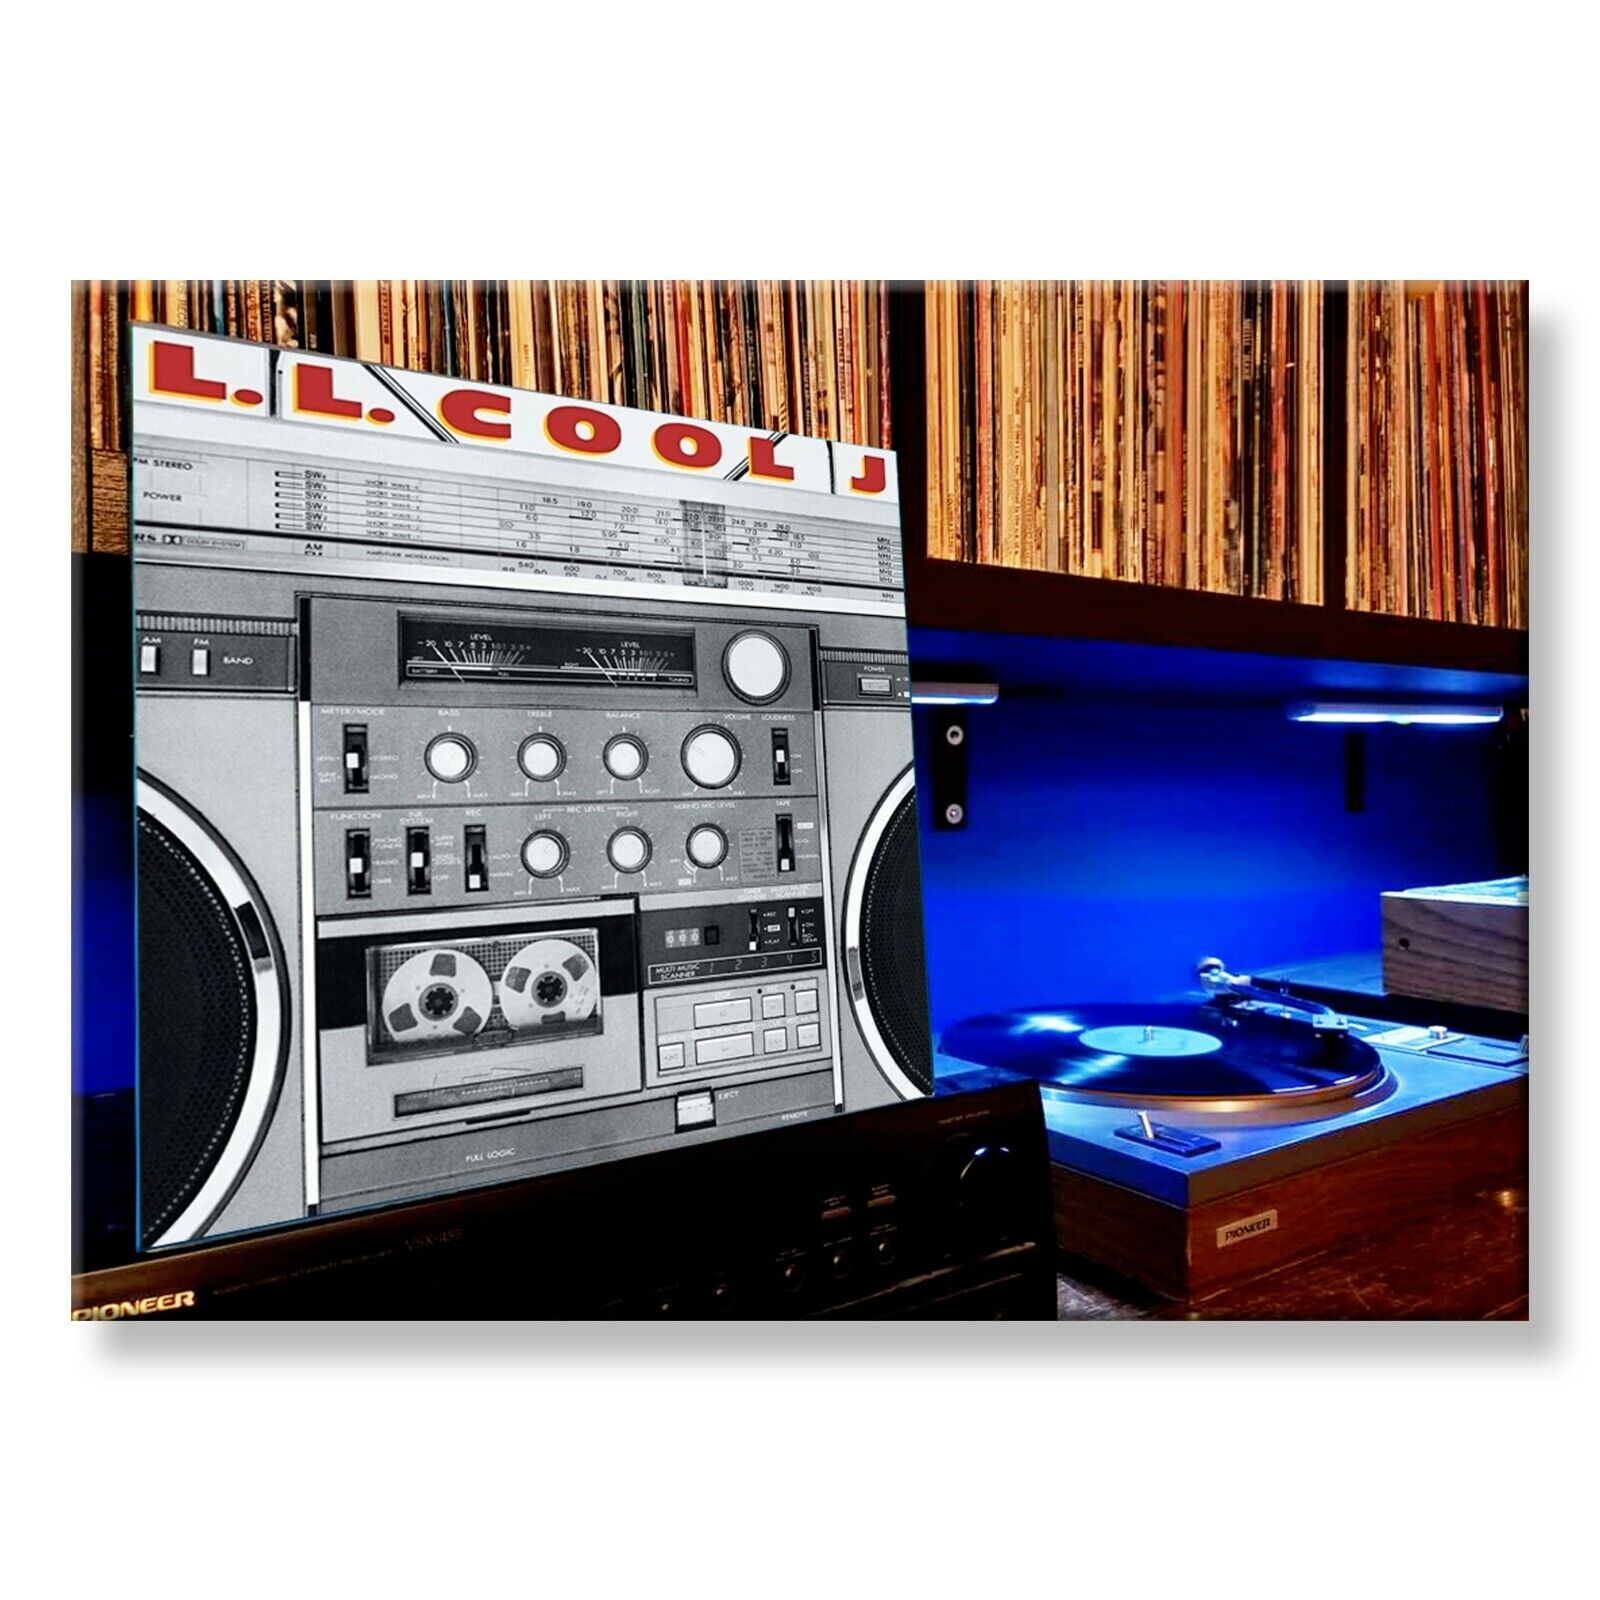 LL COOL J Radio Classic Album 3.5 inches x 2.5 inches FRIDGE MAGNET